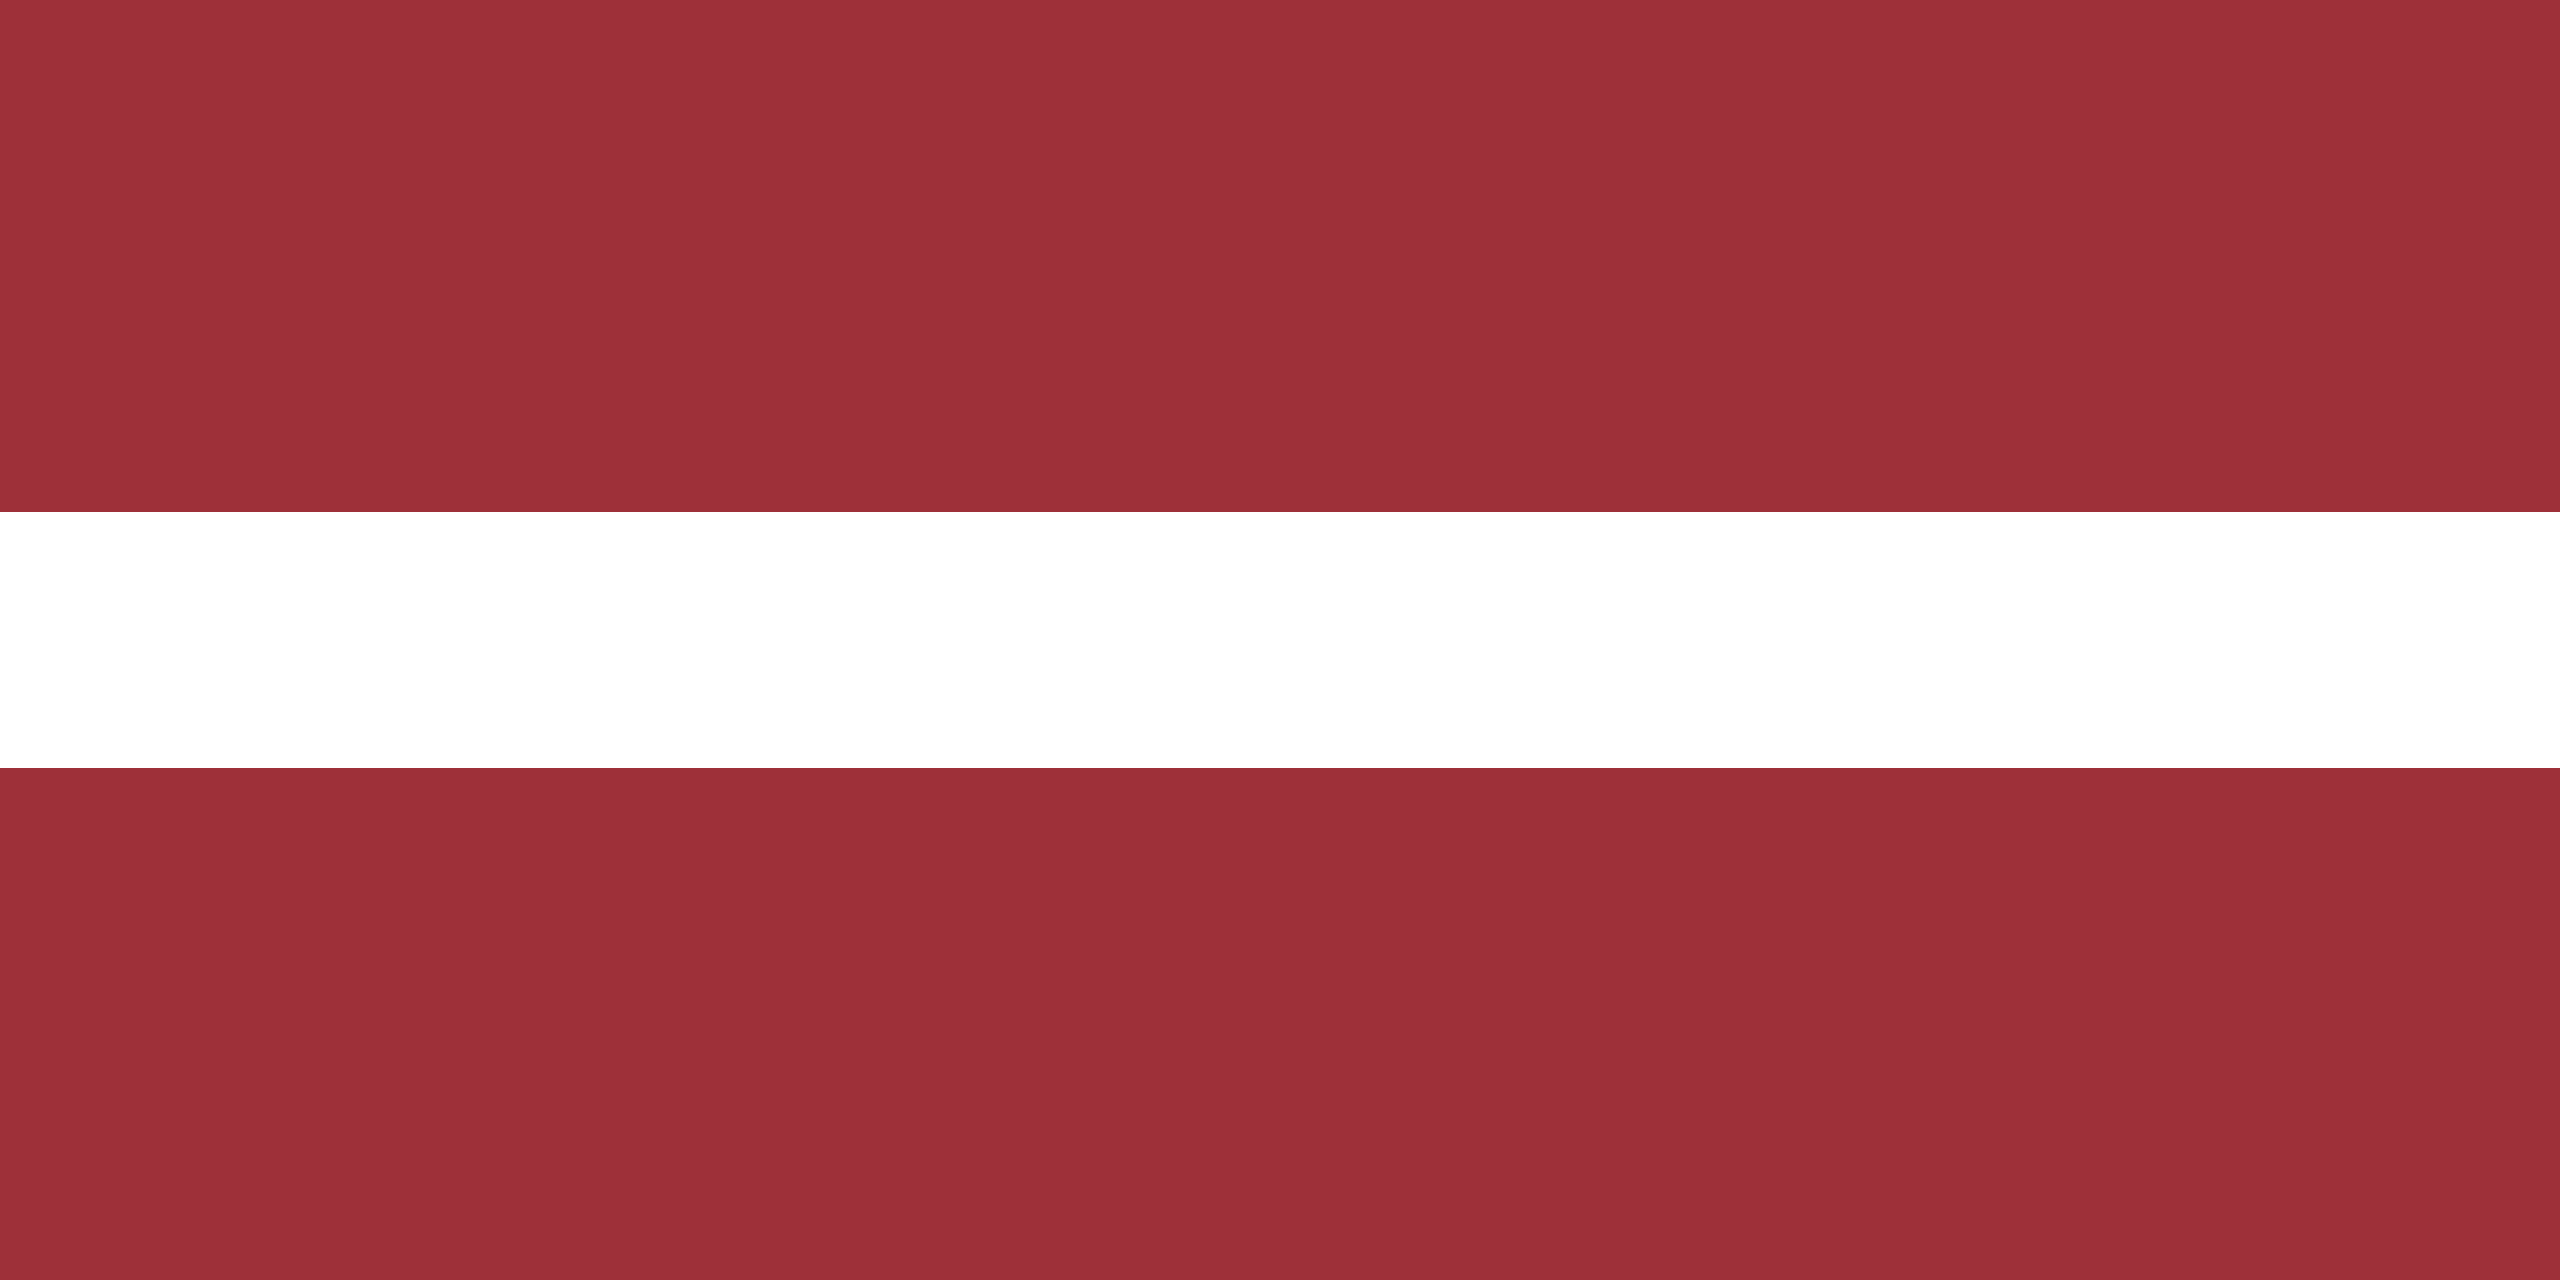 200 Adet Letonya İlave Tektip Geçiş Belgesi Temin Edildi